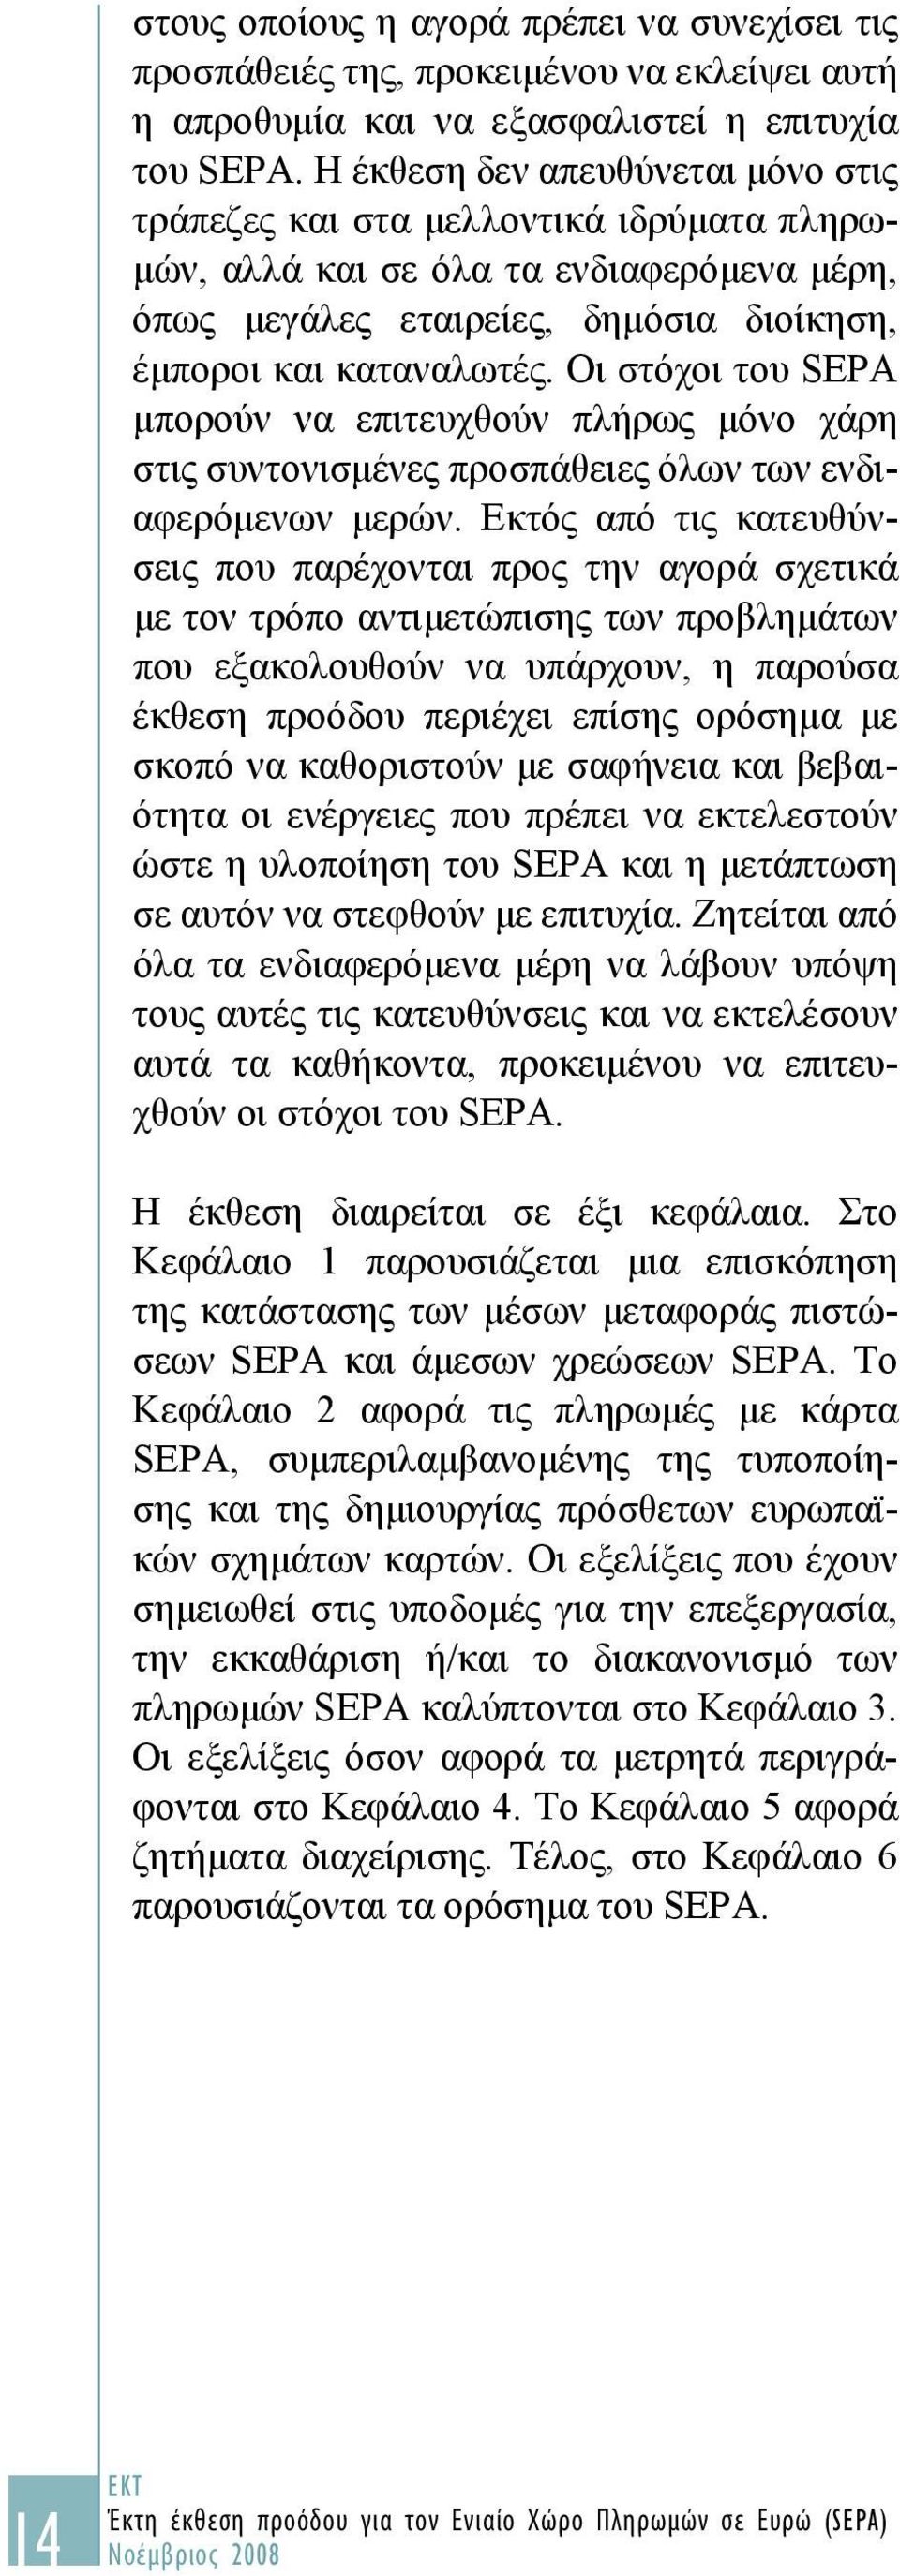 Οι στόχοι του SEPA μπορούν να επιτευχθούν πλήρως μόνο χάρη στις συντονισμένες προσπάθειες όλων των ενδιαφερόμενων μερών.